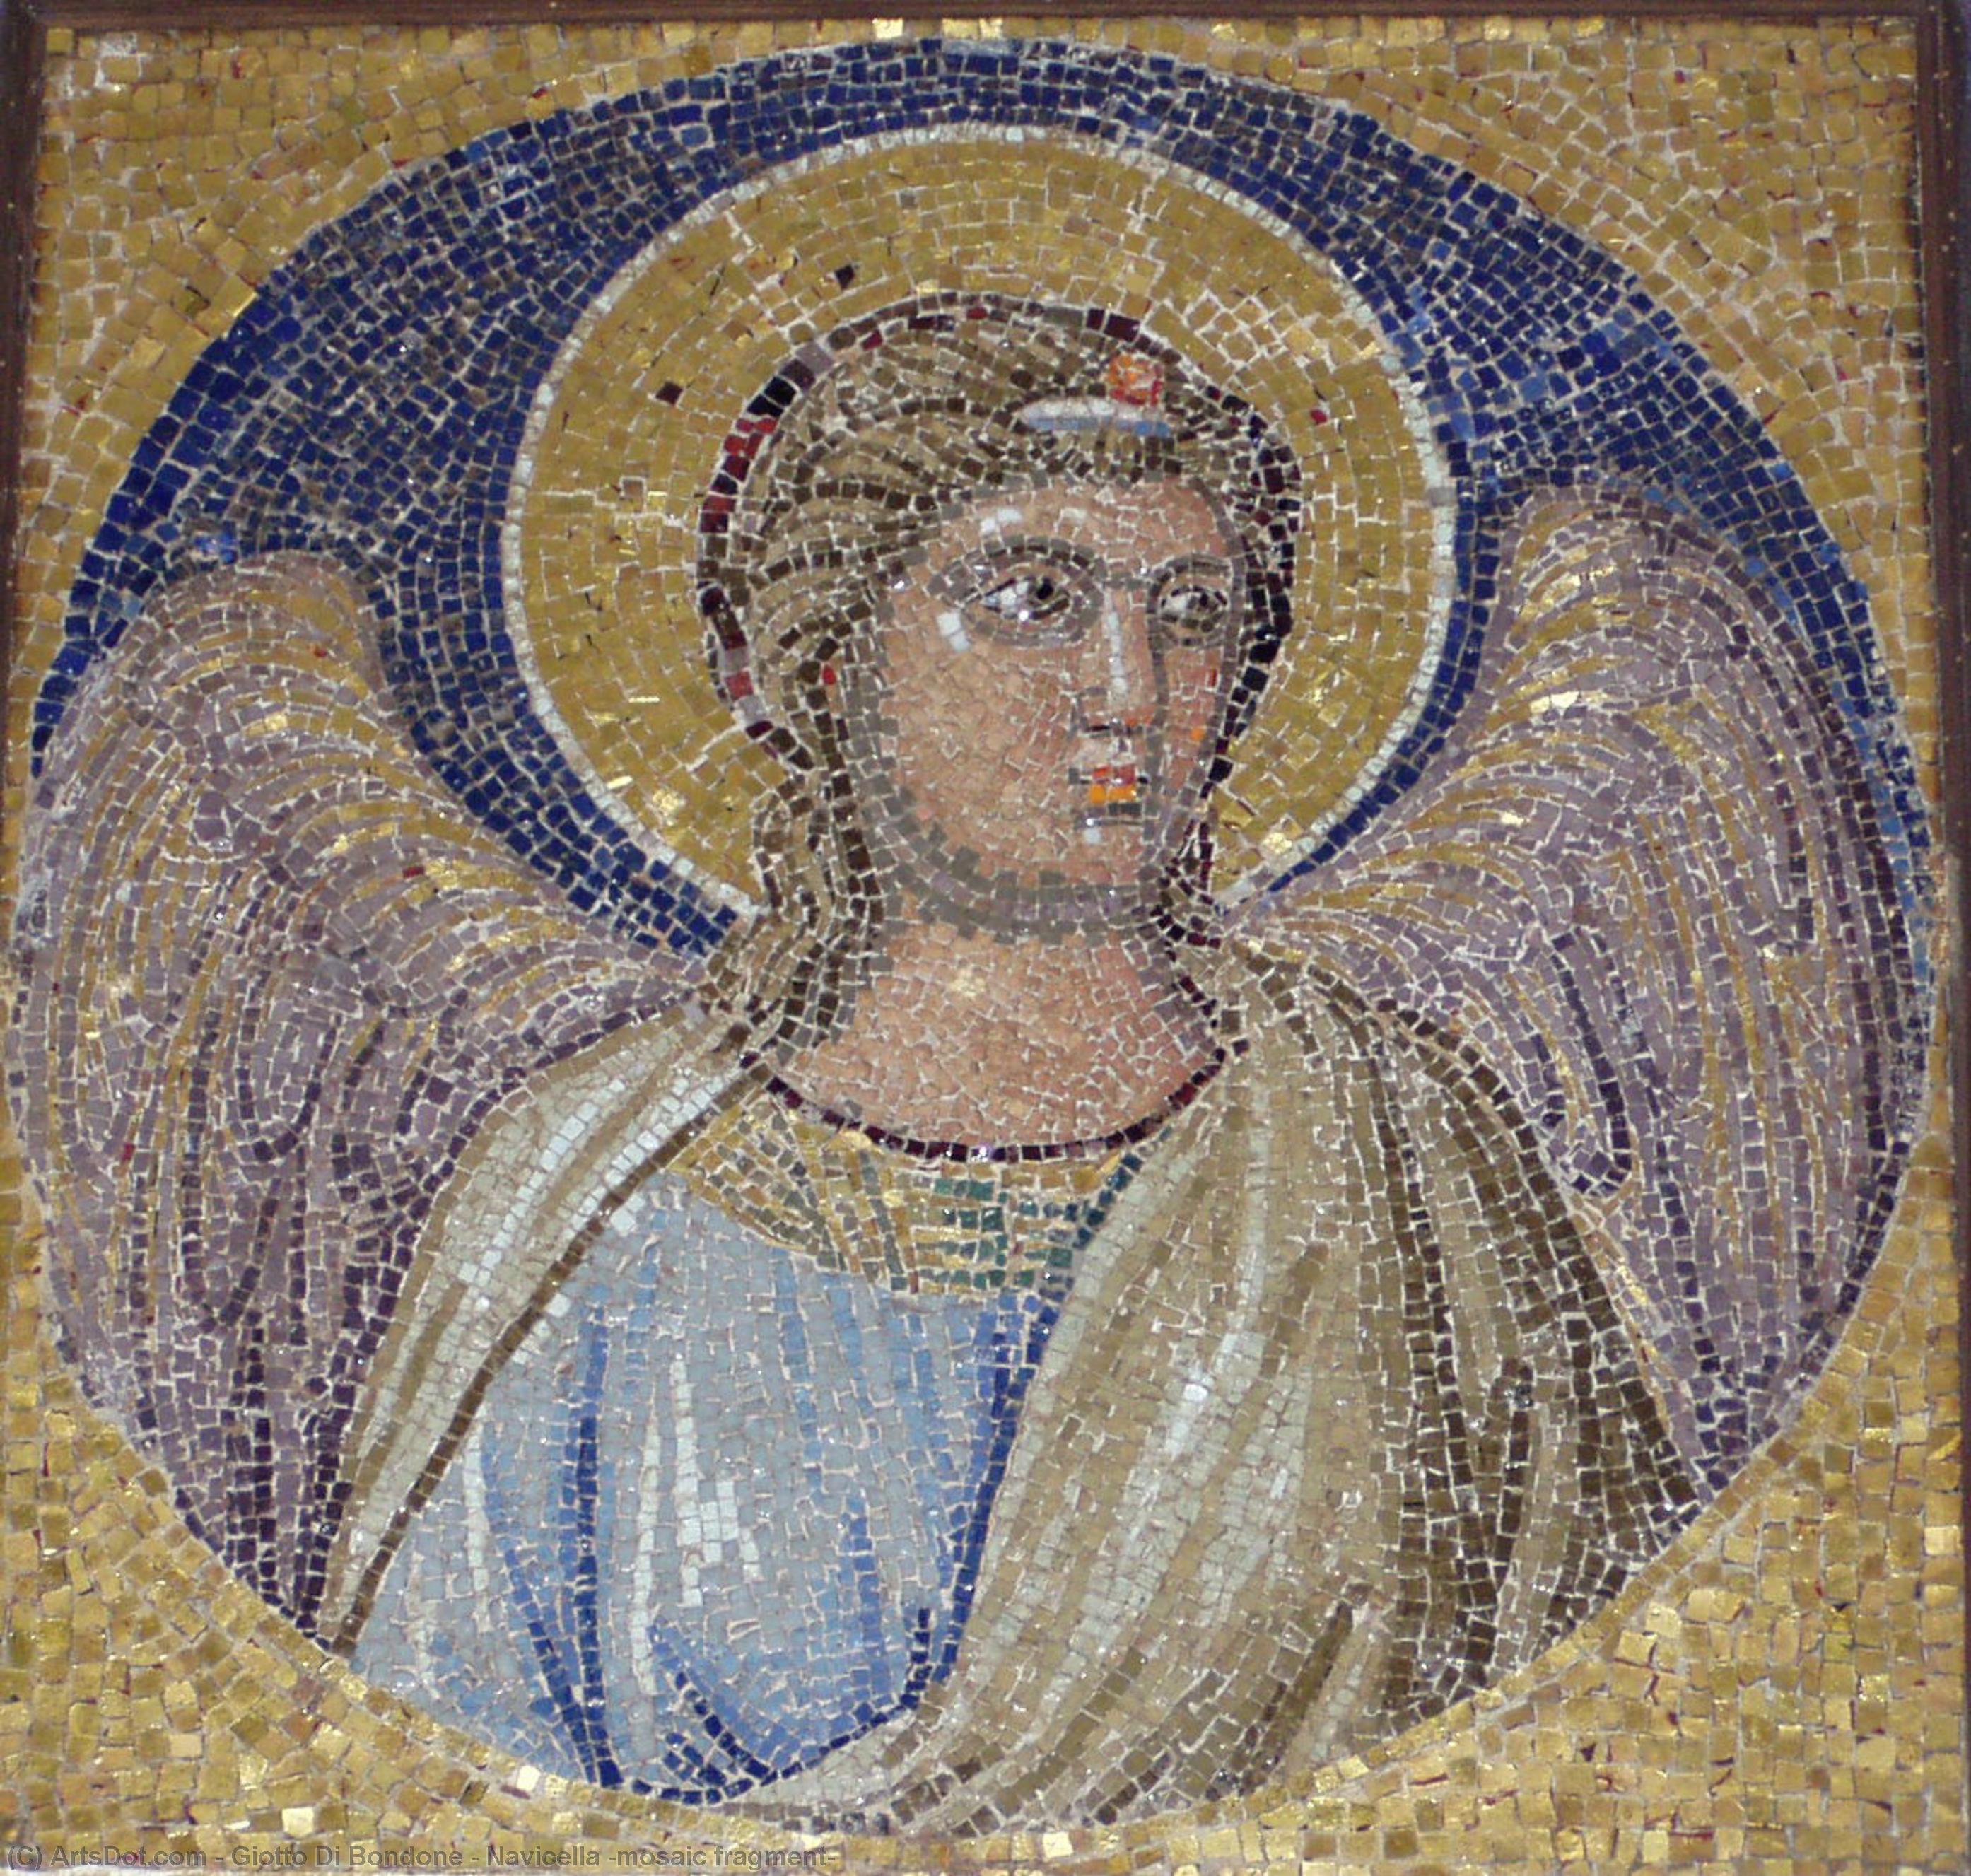 WikiOO.org - Encyclopedia of Fine Arts - Maleri, Artwork Giotto Di Bondone - Navicella (mosaic fragment)